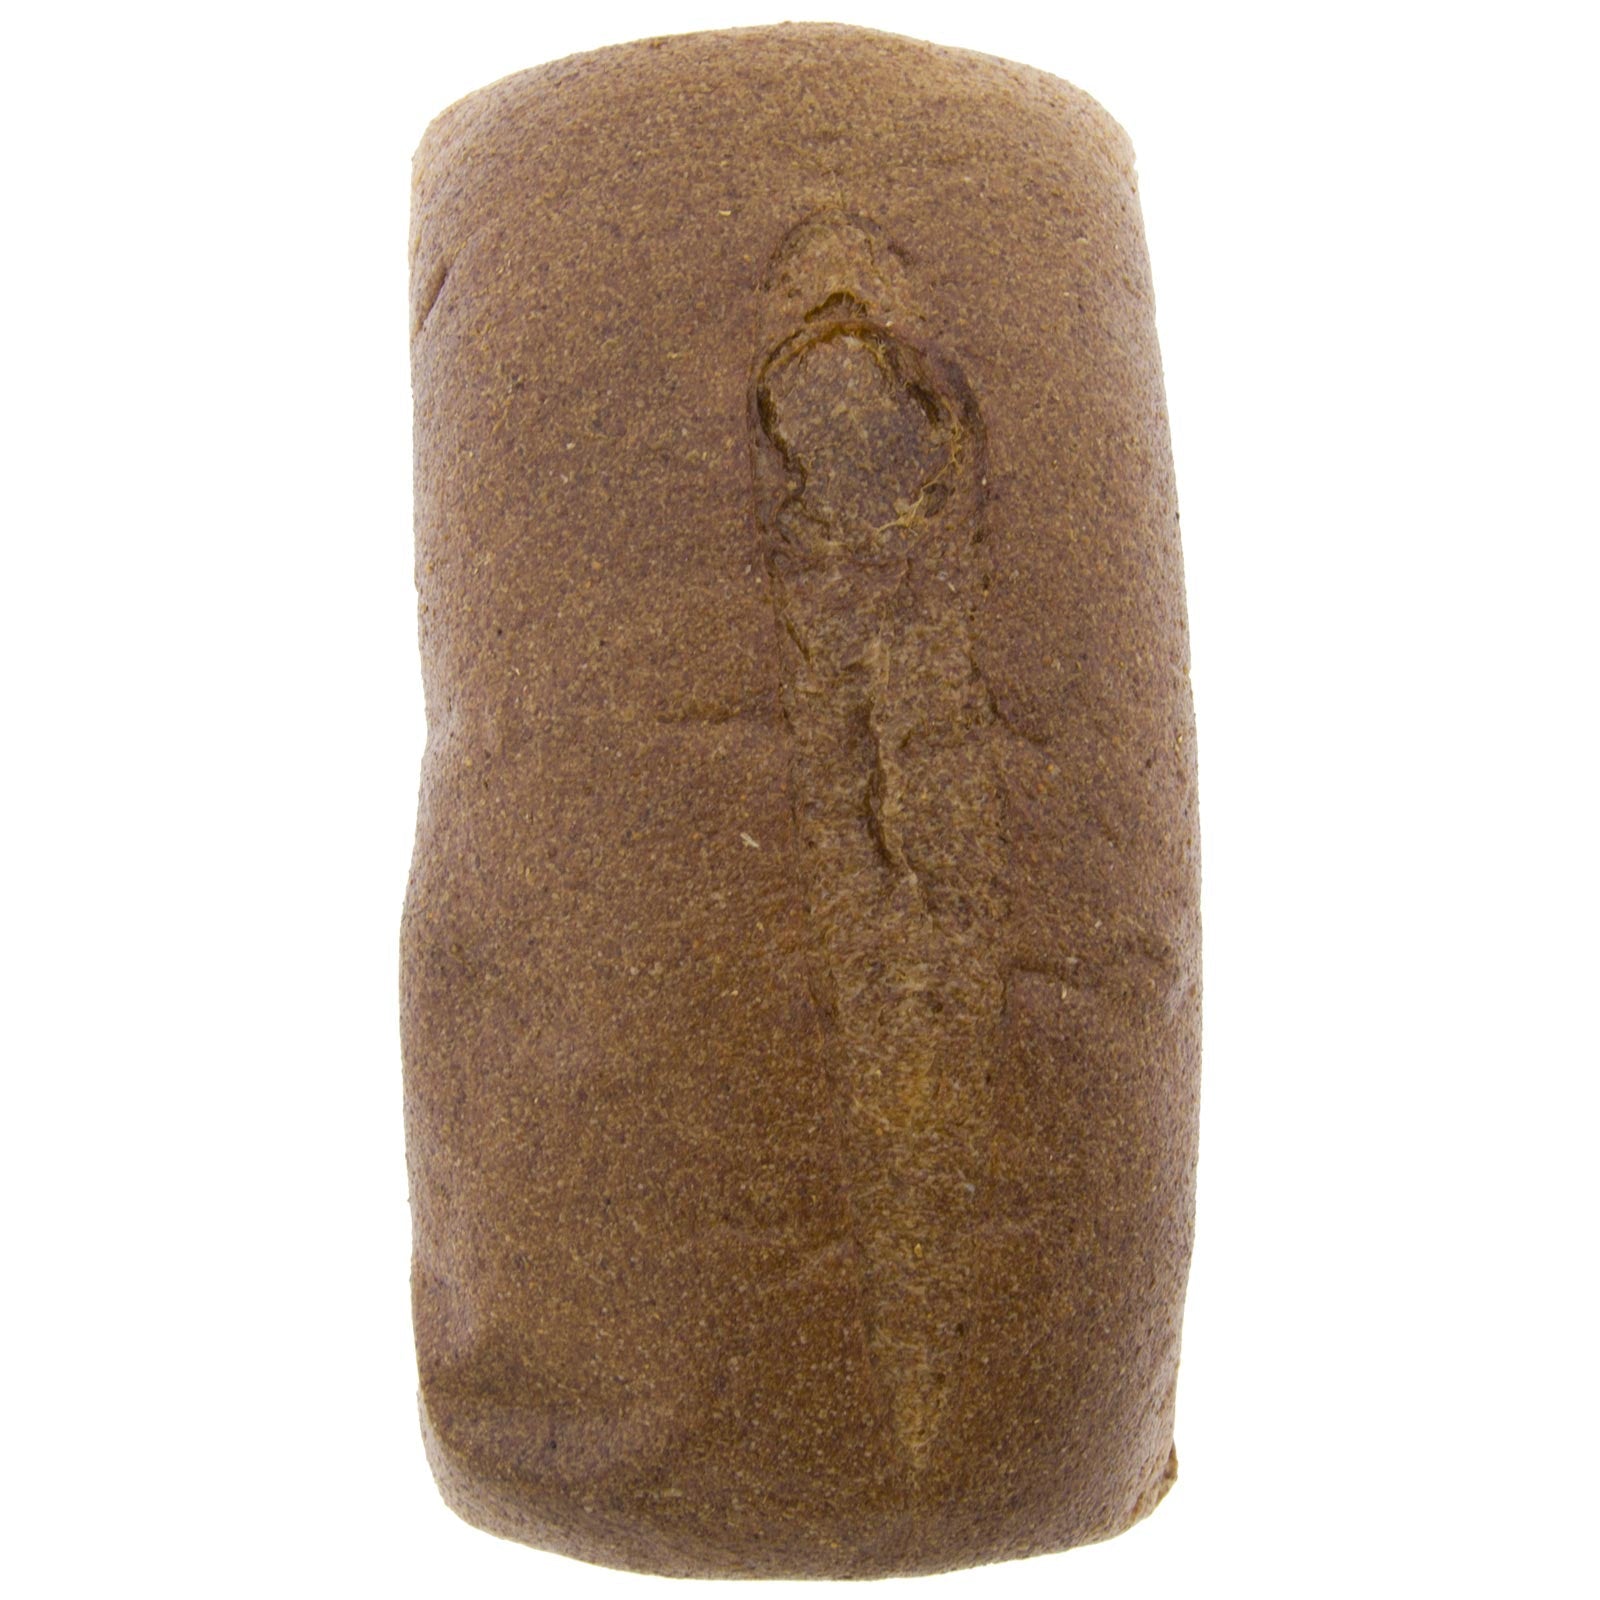 Pan de molde de centeno integral sen sal ecolóxica (8 unidades x 400 g) (sen cortar)